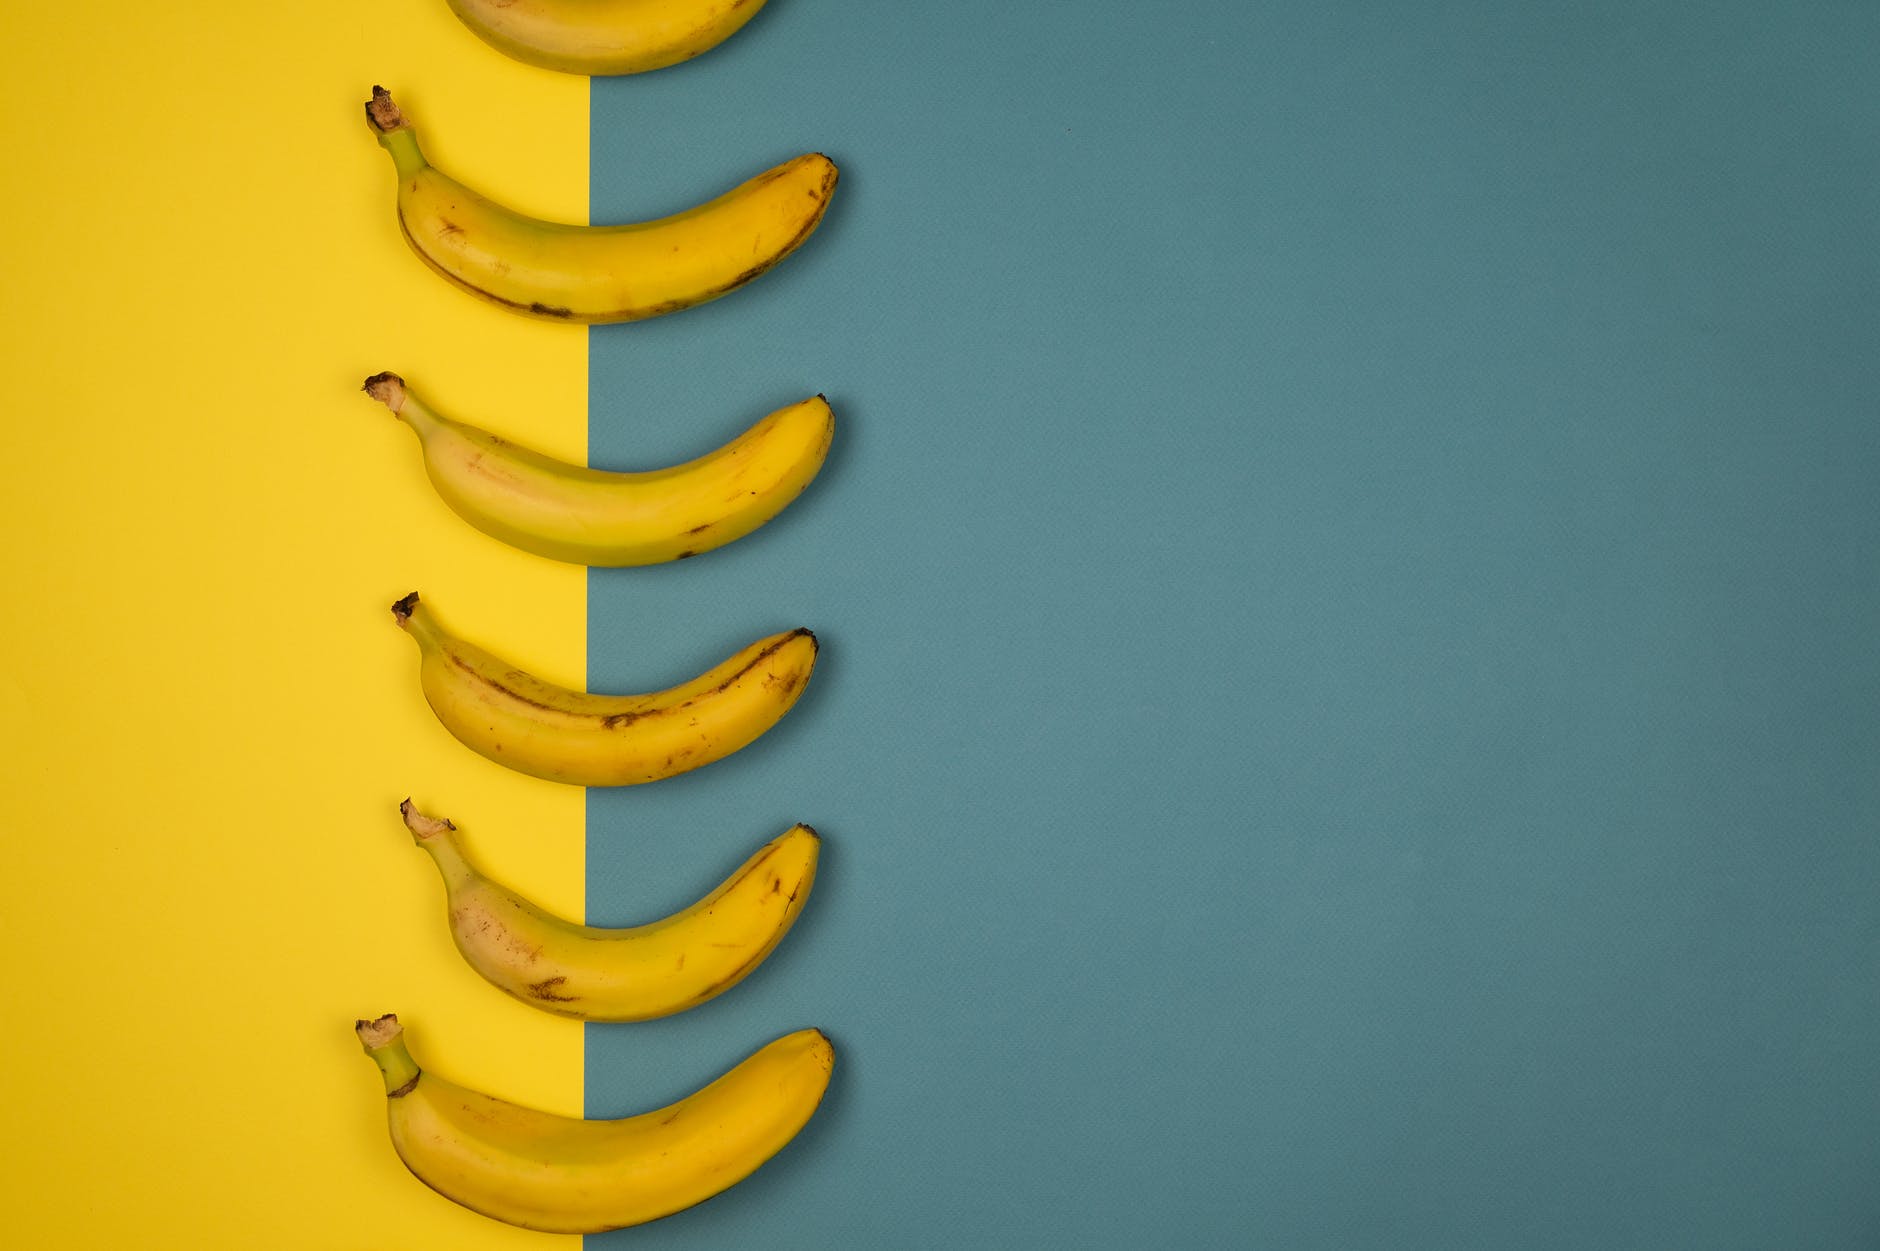 apports nutritionnels de deux bananes